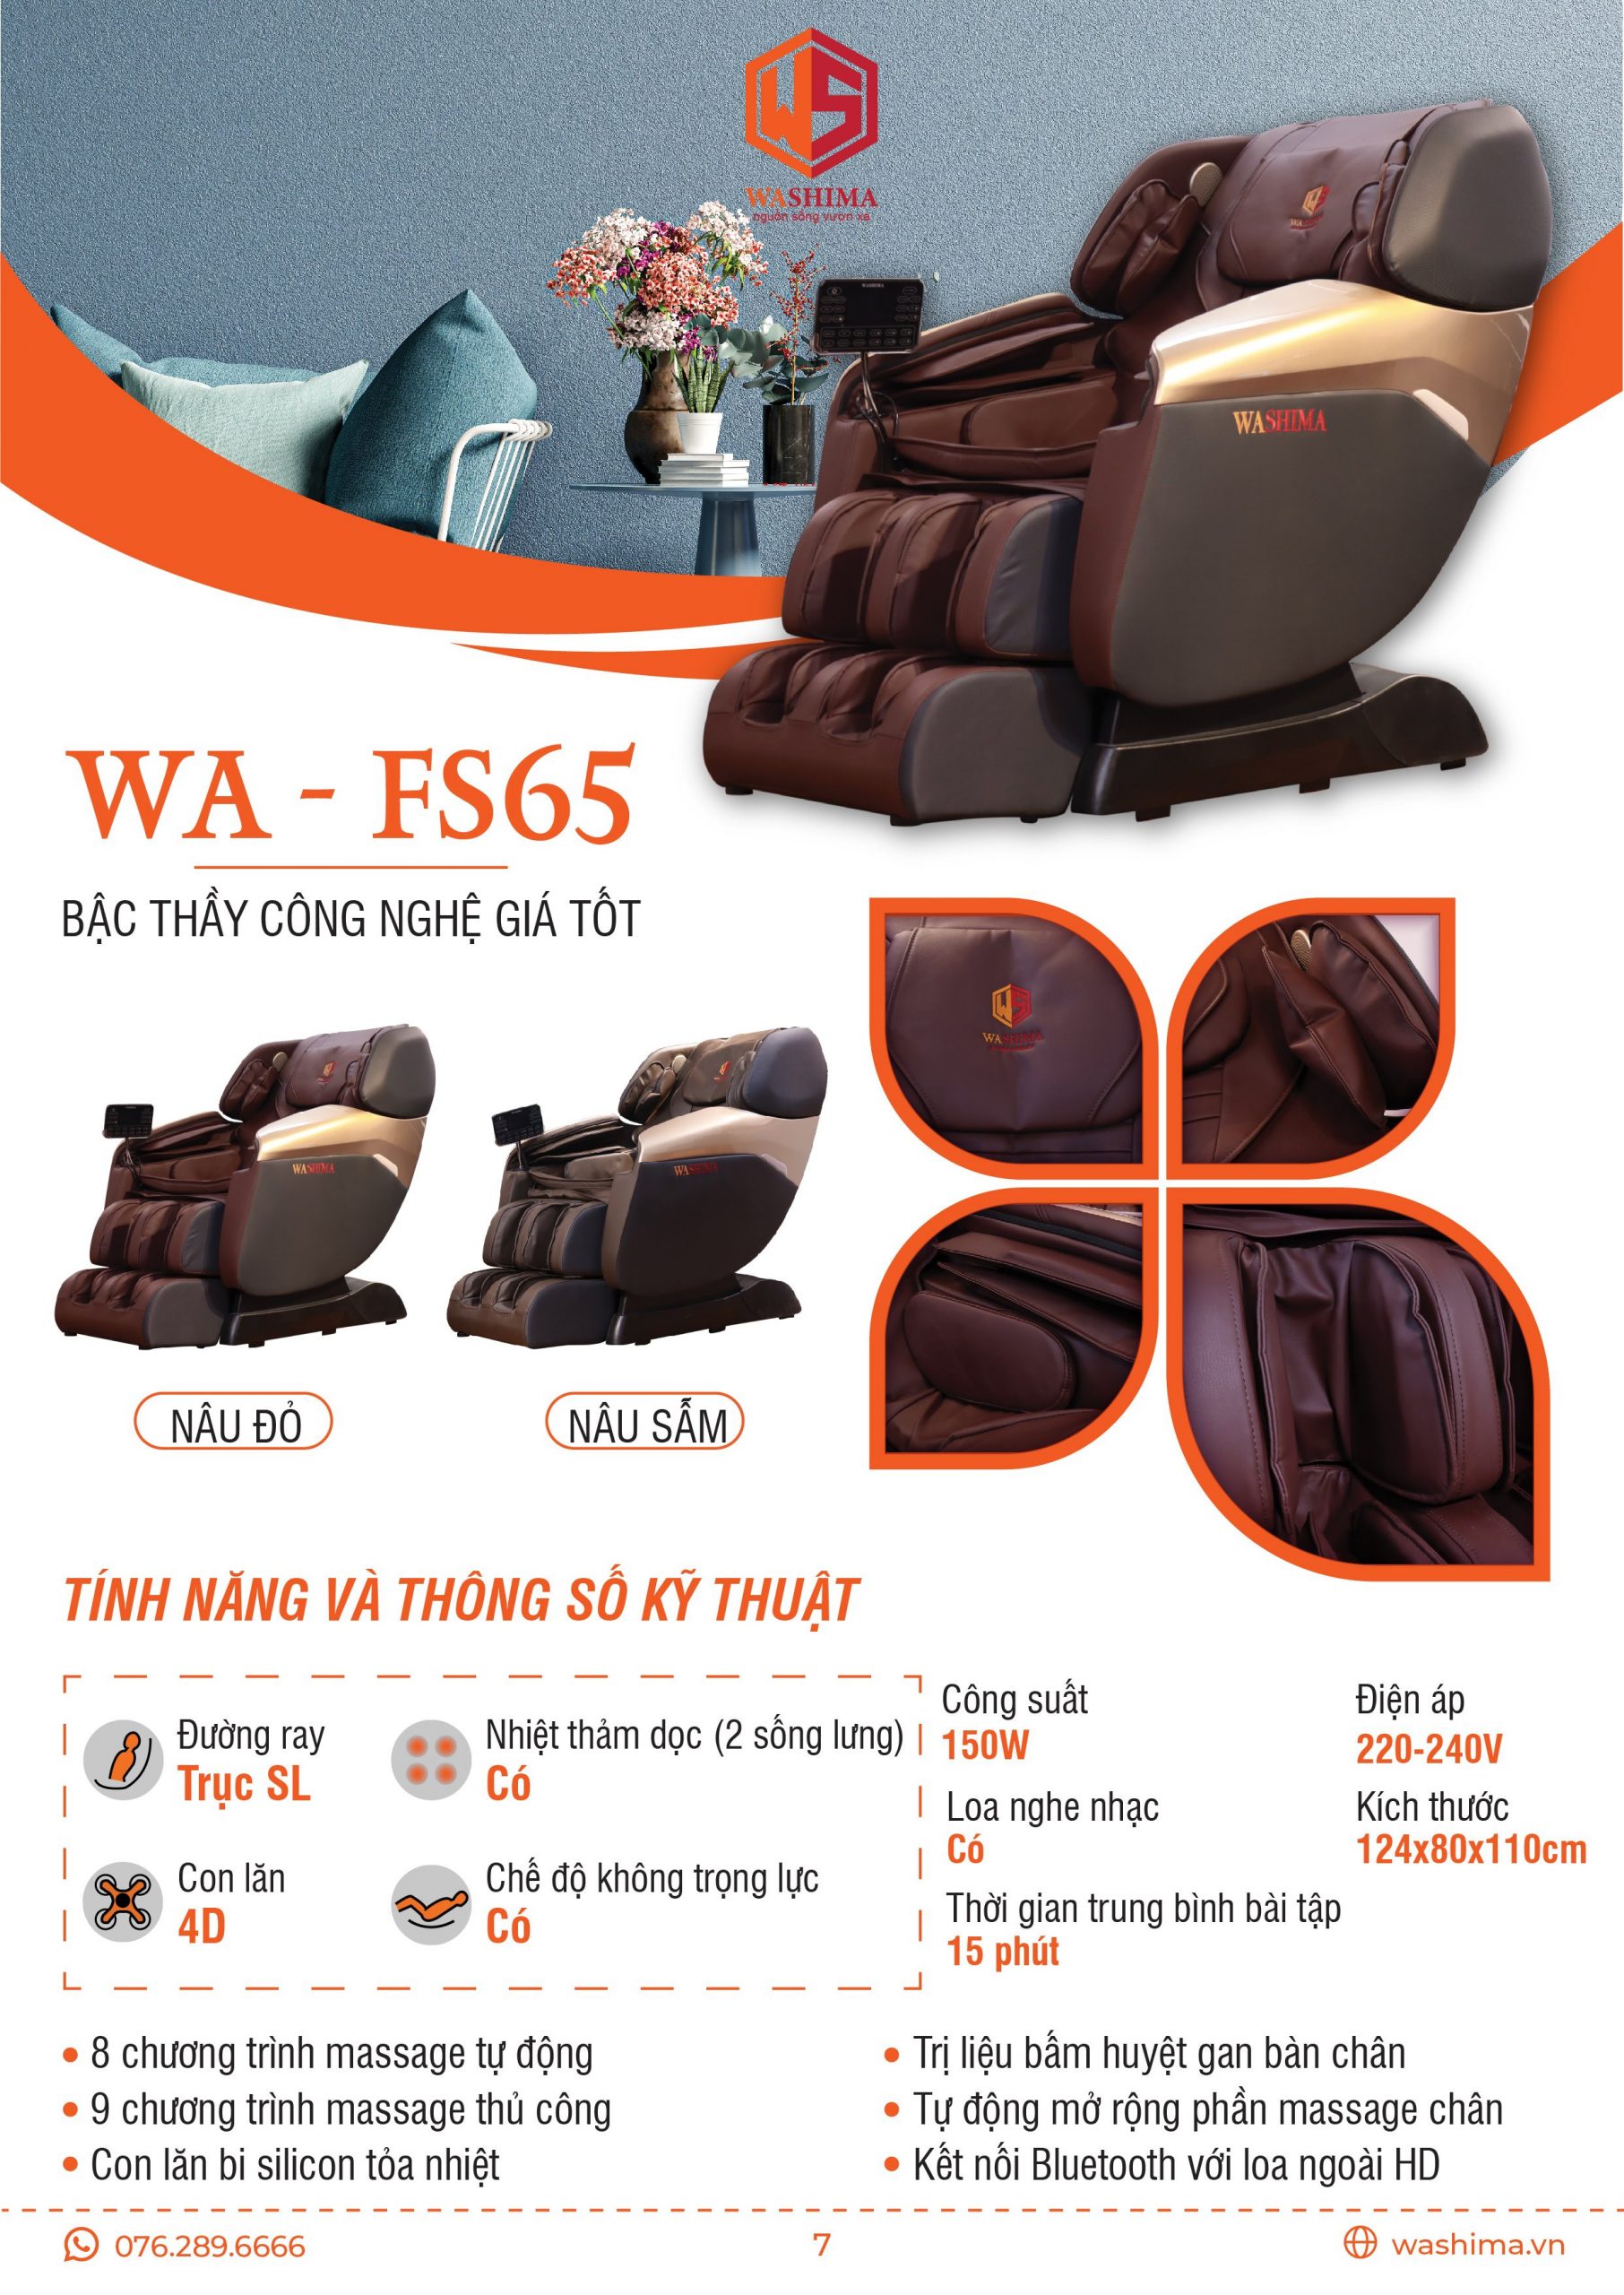 Thông số kỹ thuật của chiếc ghế massage bậc thày công nghệ giá tốt WA-FS65